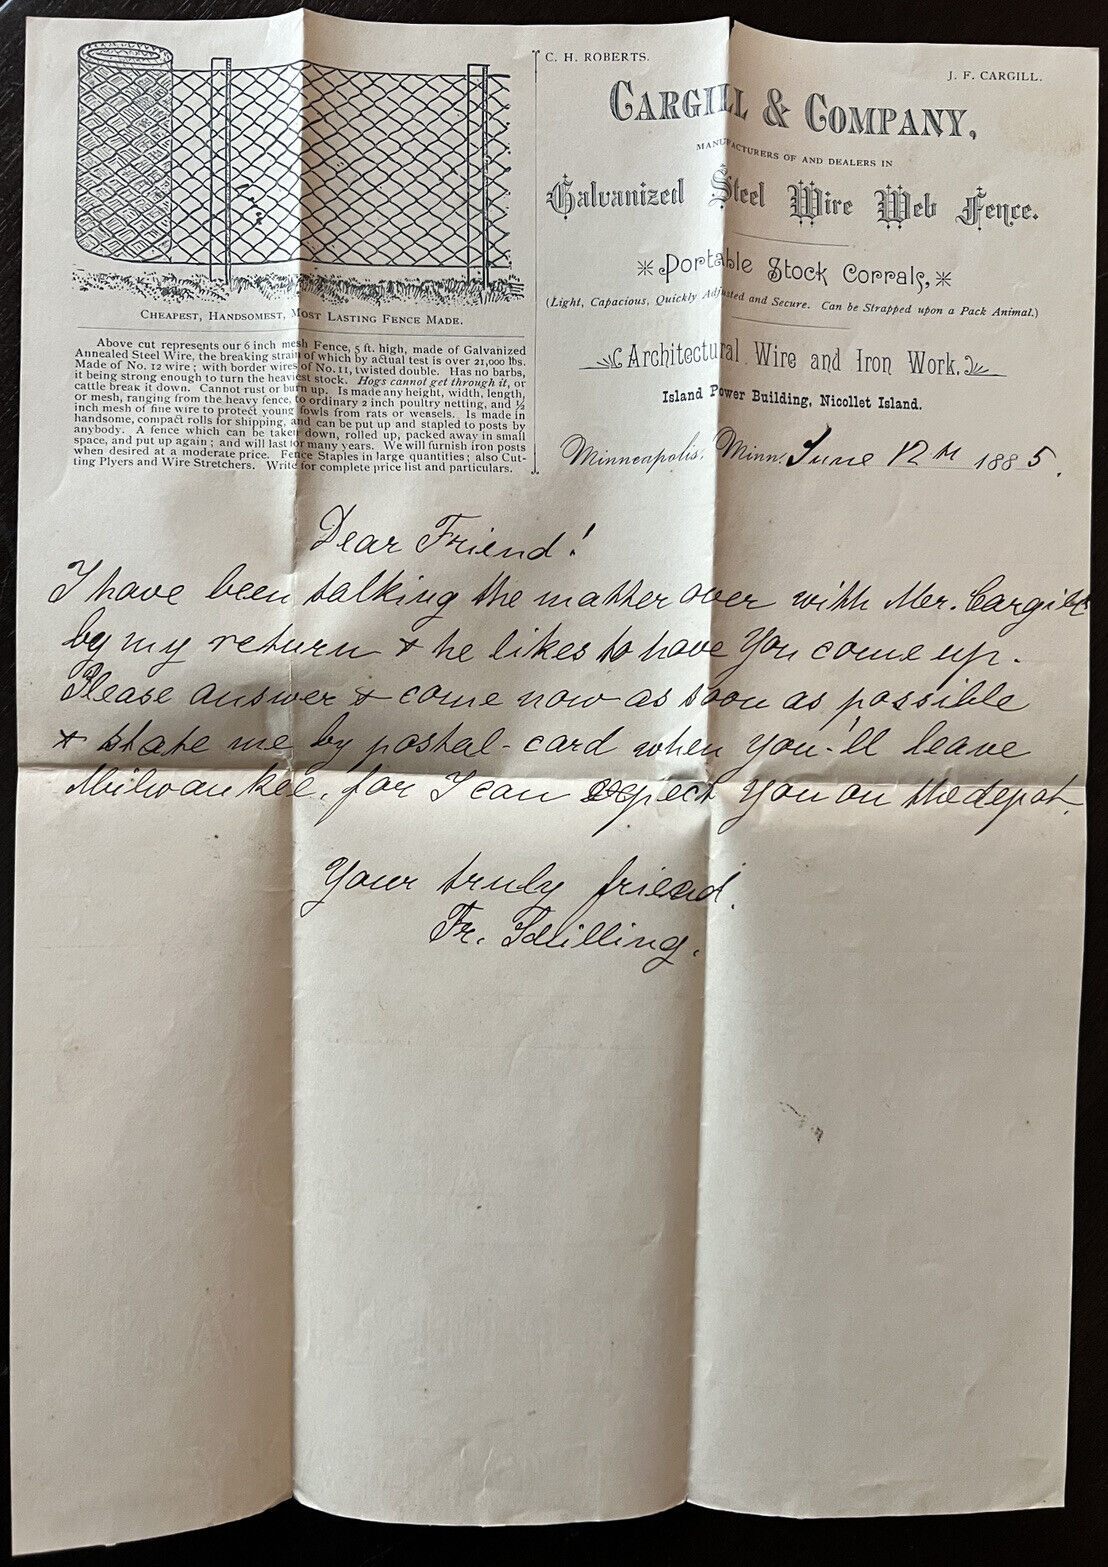 1885 LETTER WRITTEN ON CARGILL & COMPANY GALVANIZED STEEL WIRE FENCE LETTERHEAD